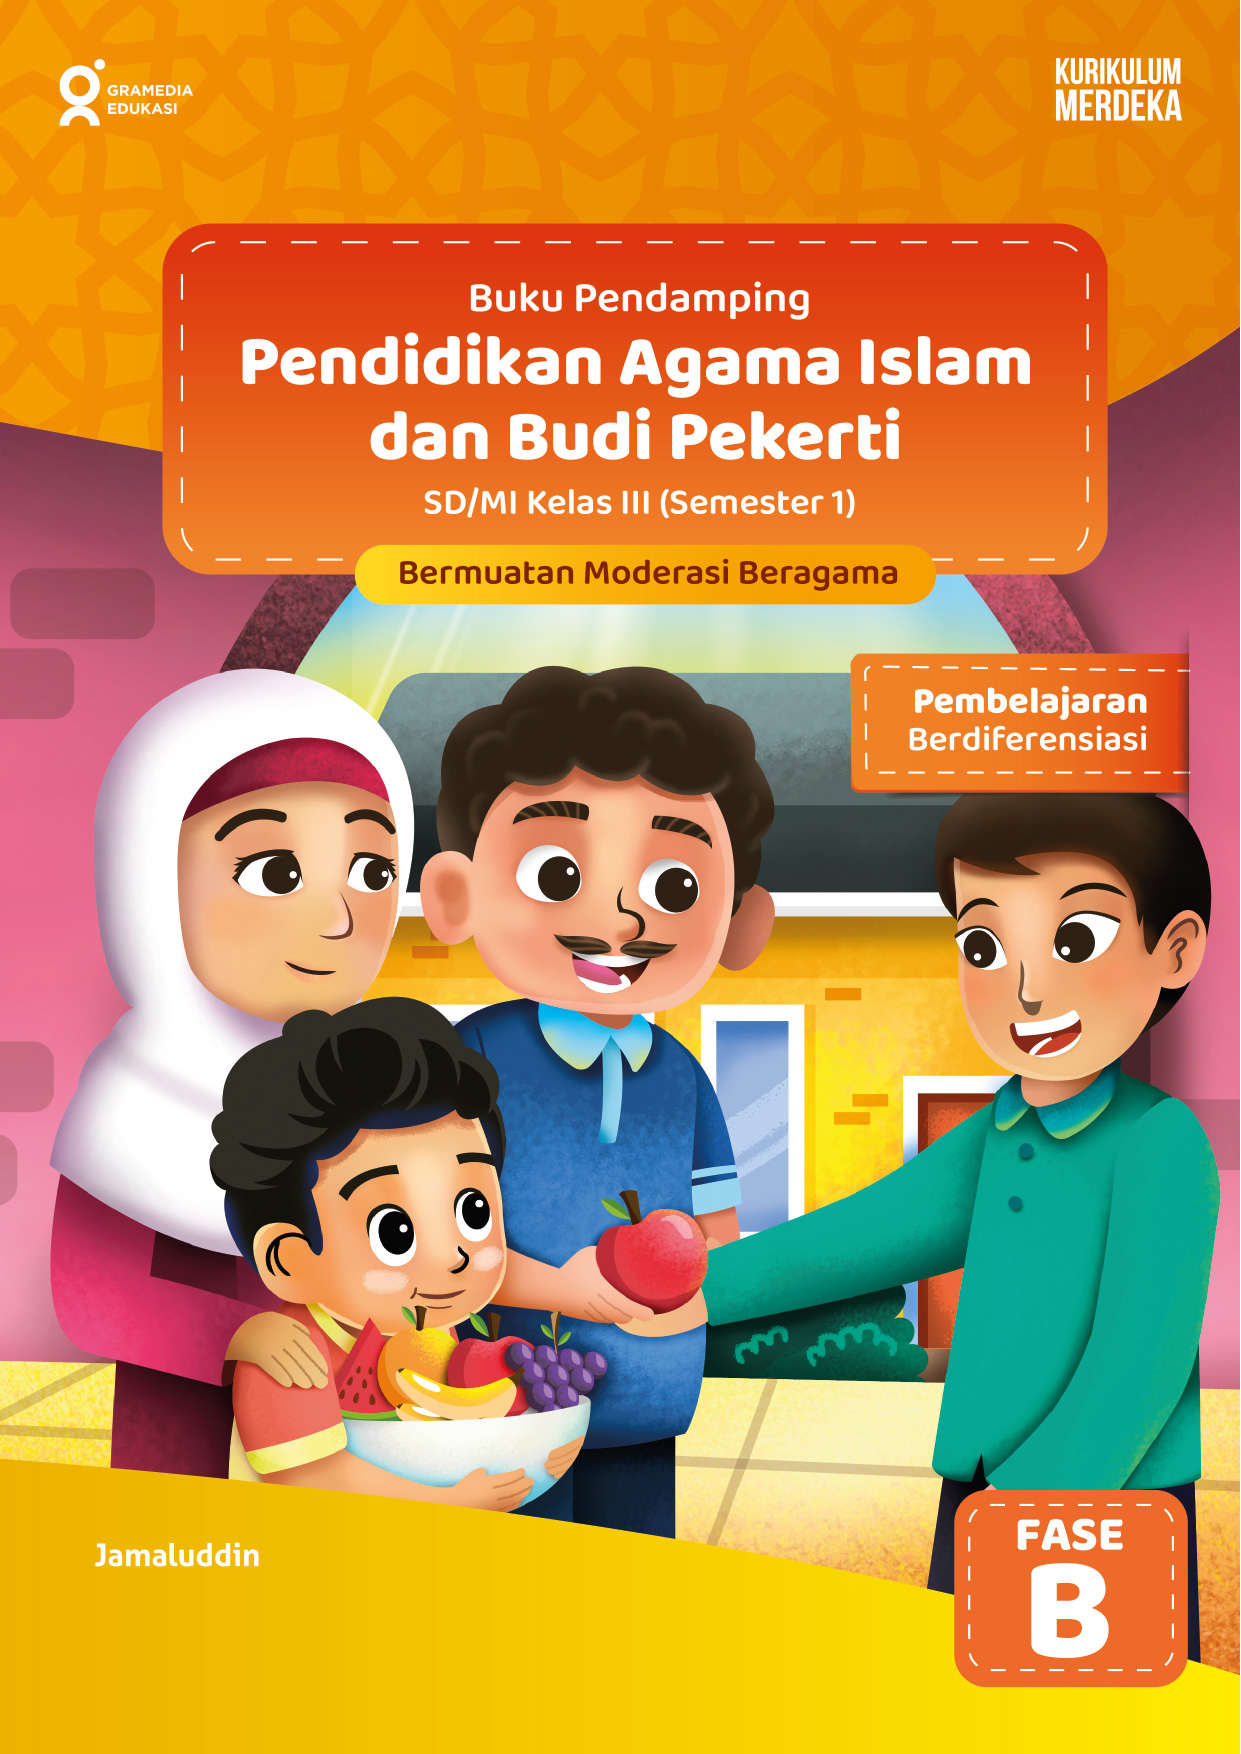 Pendidikan agama islam dan budi pekerti SD/MI kelas III